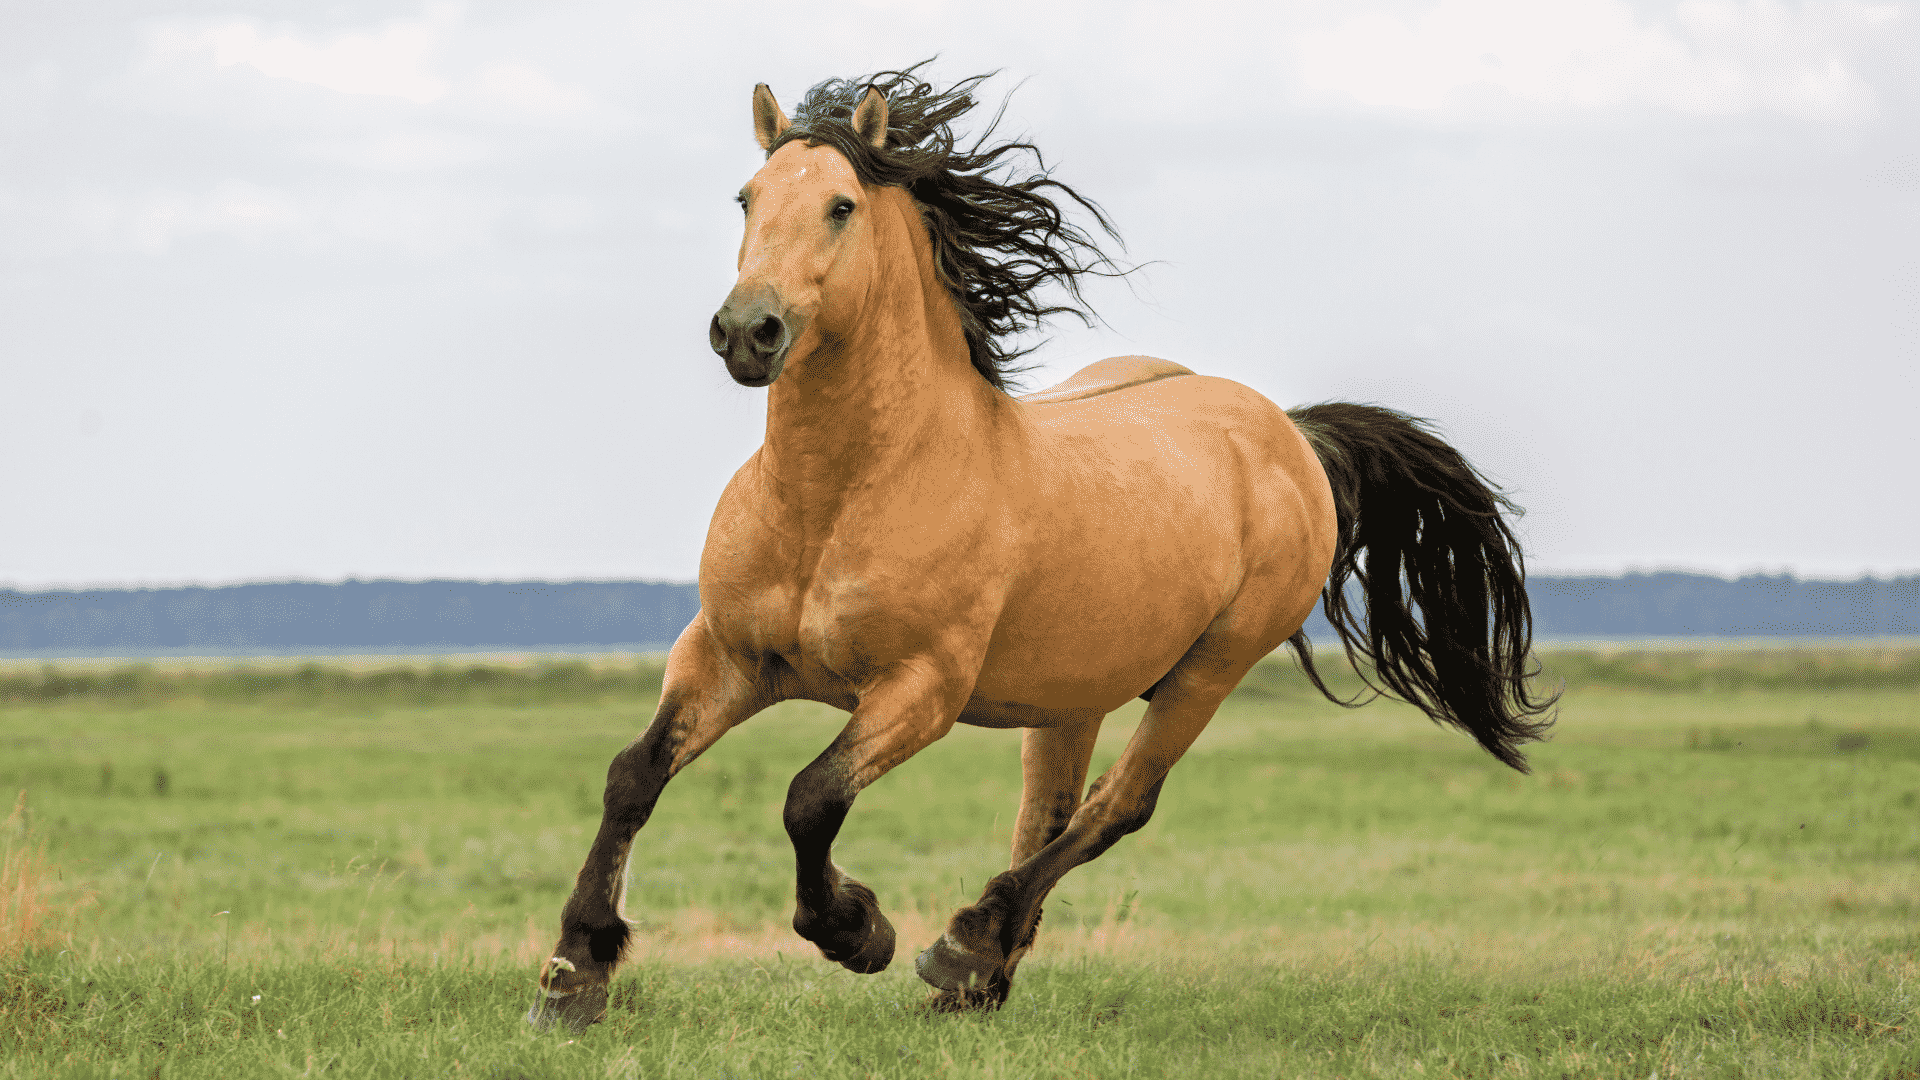 Sonhar Com Cavalo: Significados, Simbolismos, Interpretações